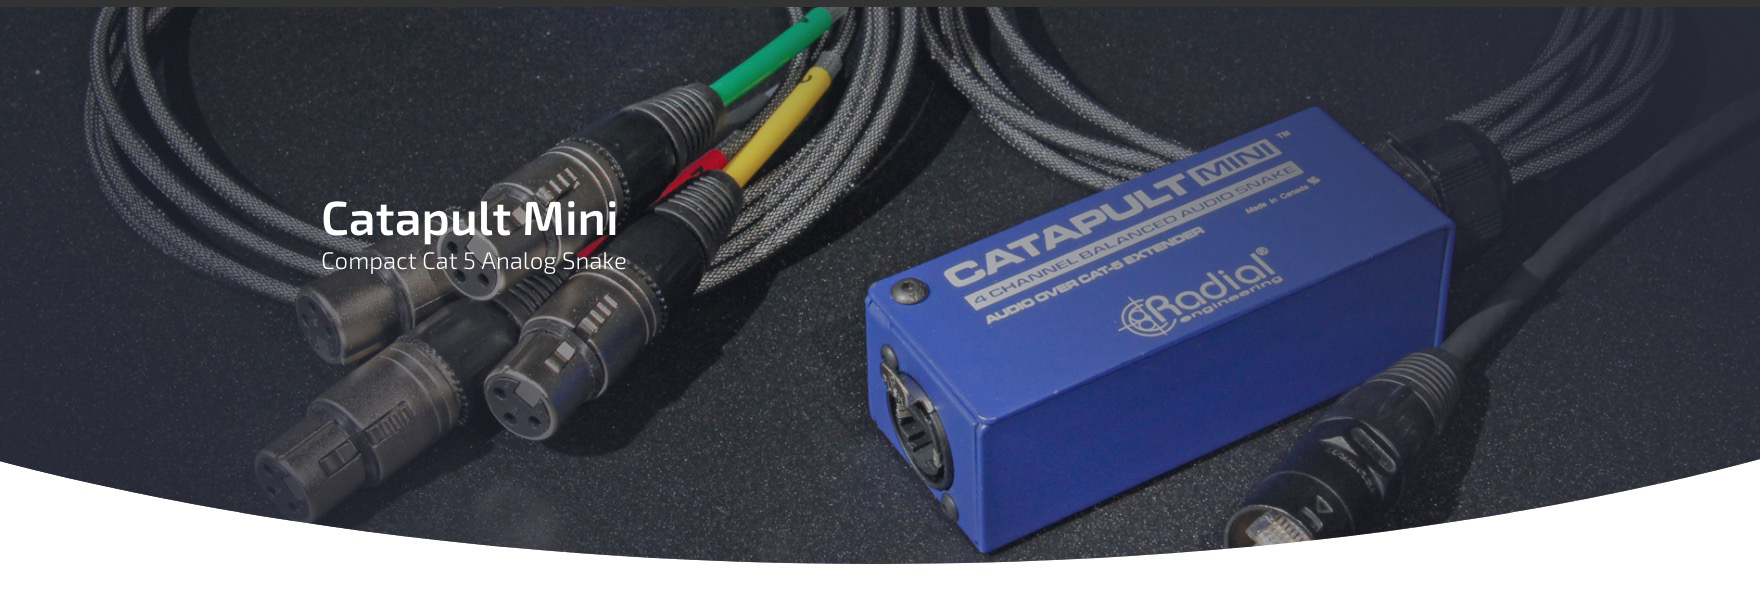 Catapult Mini è uno snake audio compatto a 4 canali che consente l'invio di segnali audio analogici tramite cavo STP (Shielded Twisted Pair) standard Cat 5 o Cat 6. 